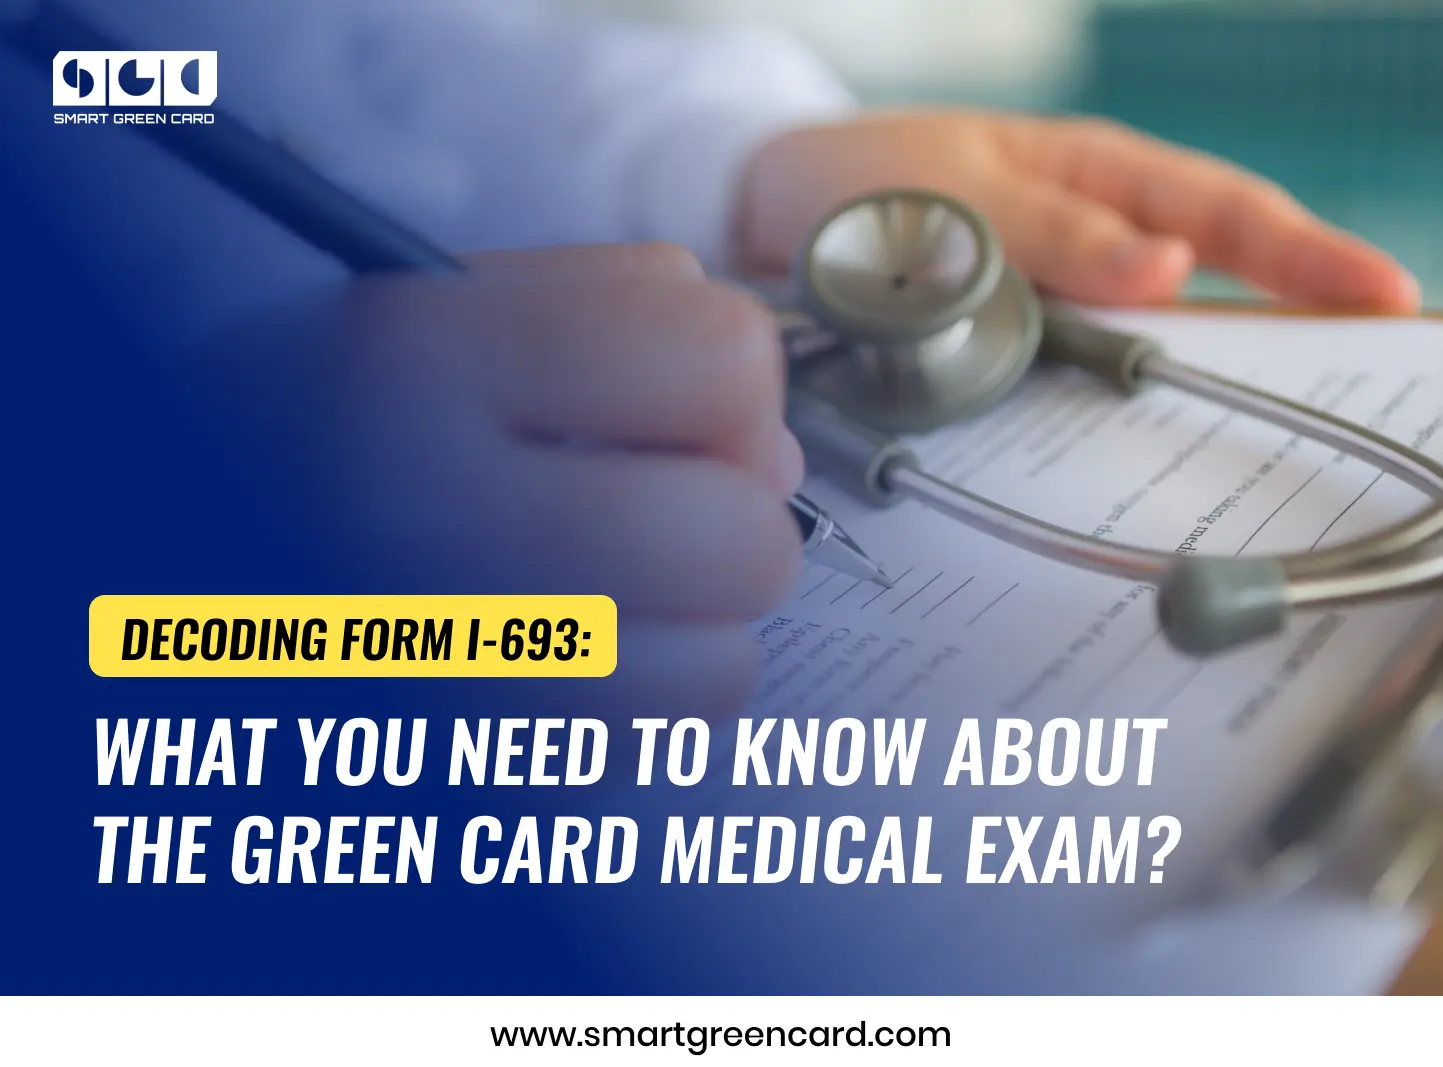 Green Card Medical Examination